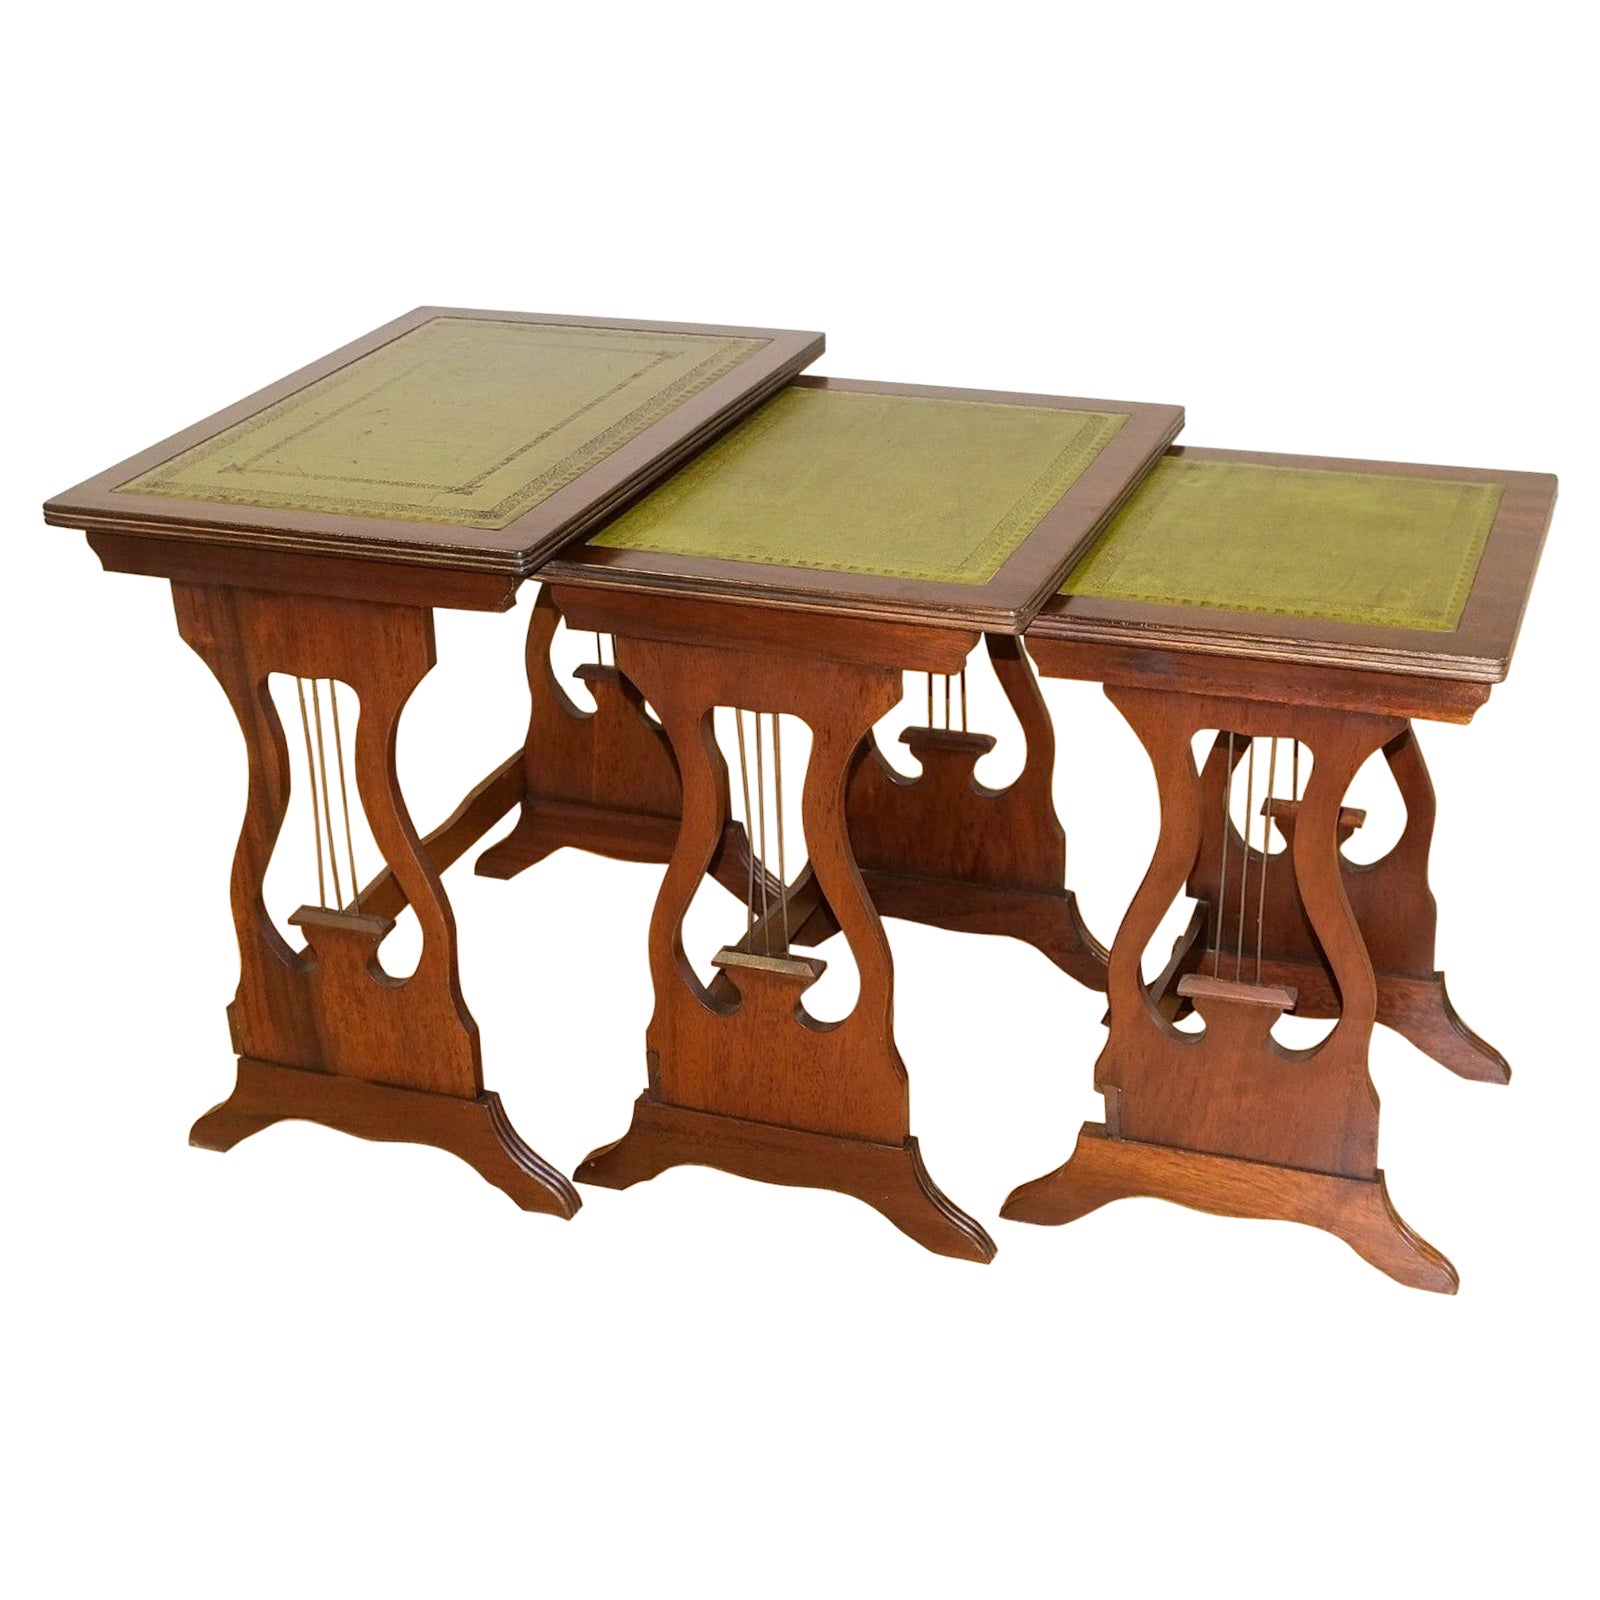 Schöne Hartholz-Tischgruppe mit grüner Lederplatte und seitlichen Stützen in Harfenform